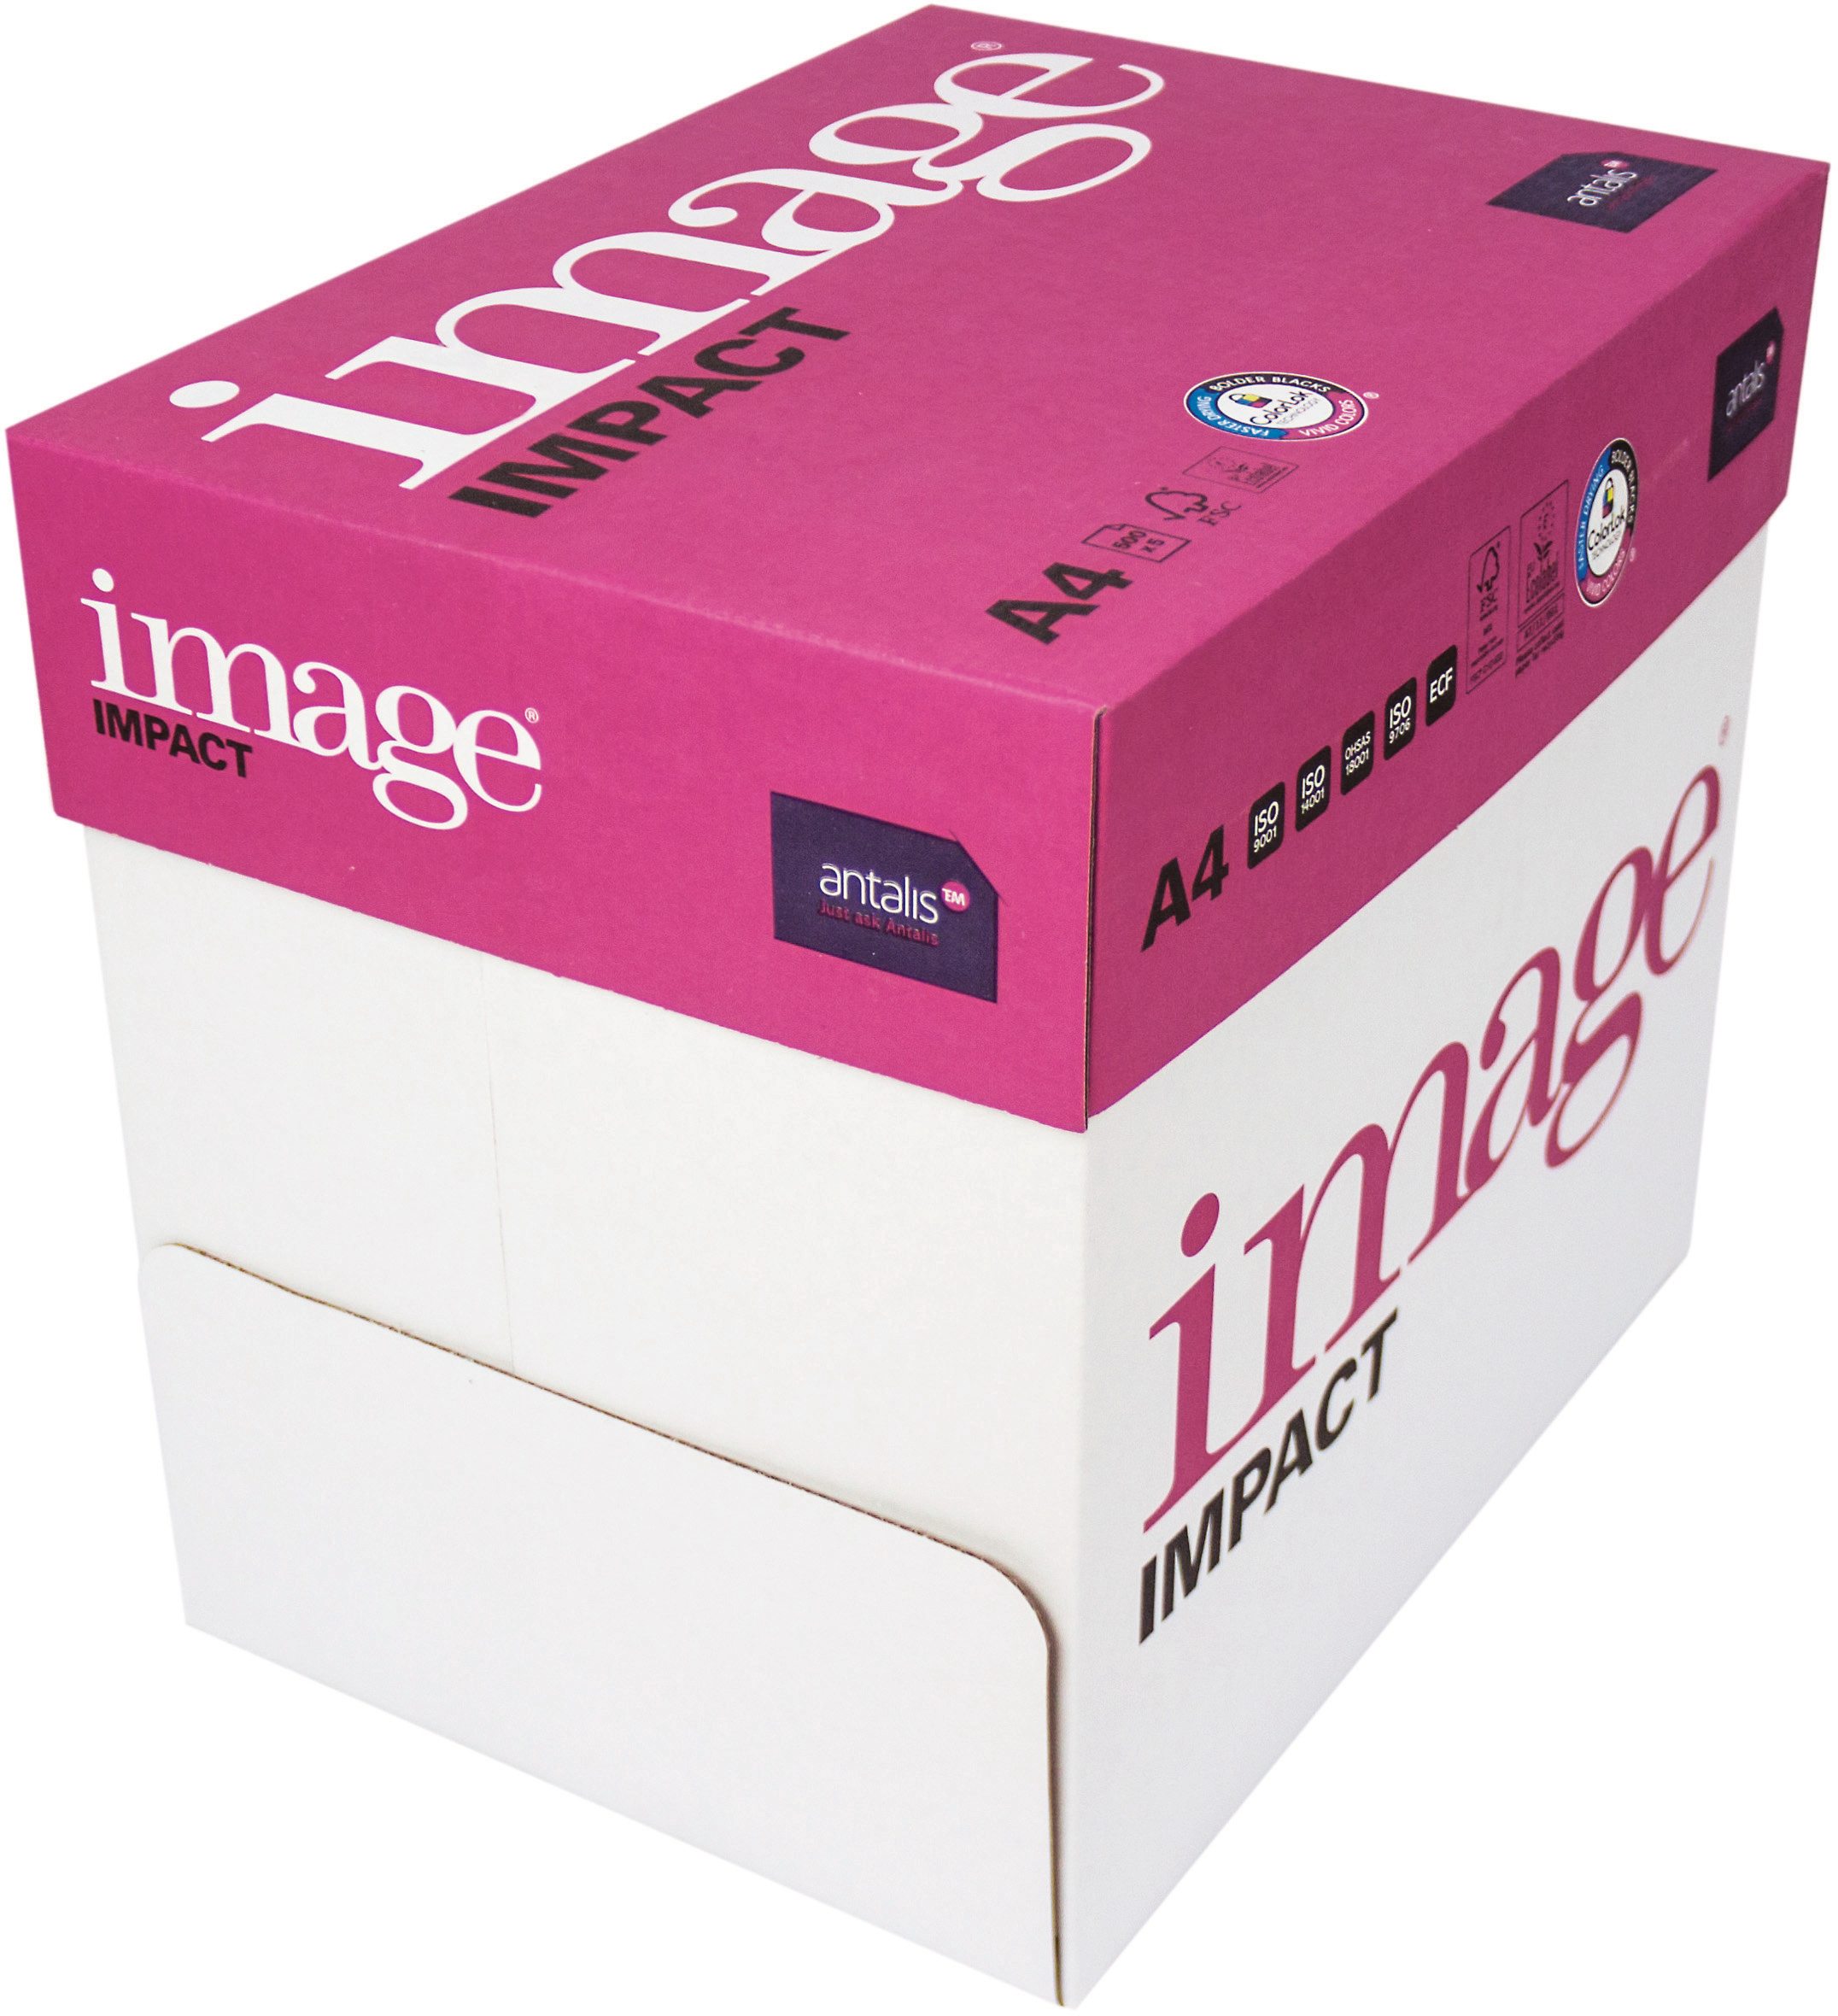 IMAGE IMPACT Papier à copier A4 420718 80g, blanc 2500 feuilles 80g, blanc 2500 feuilles